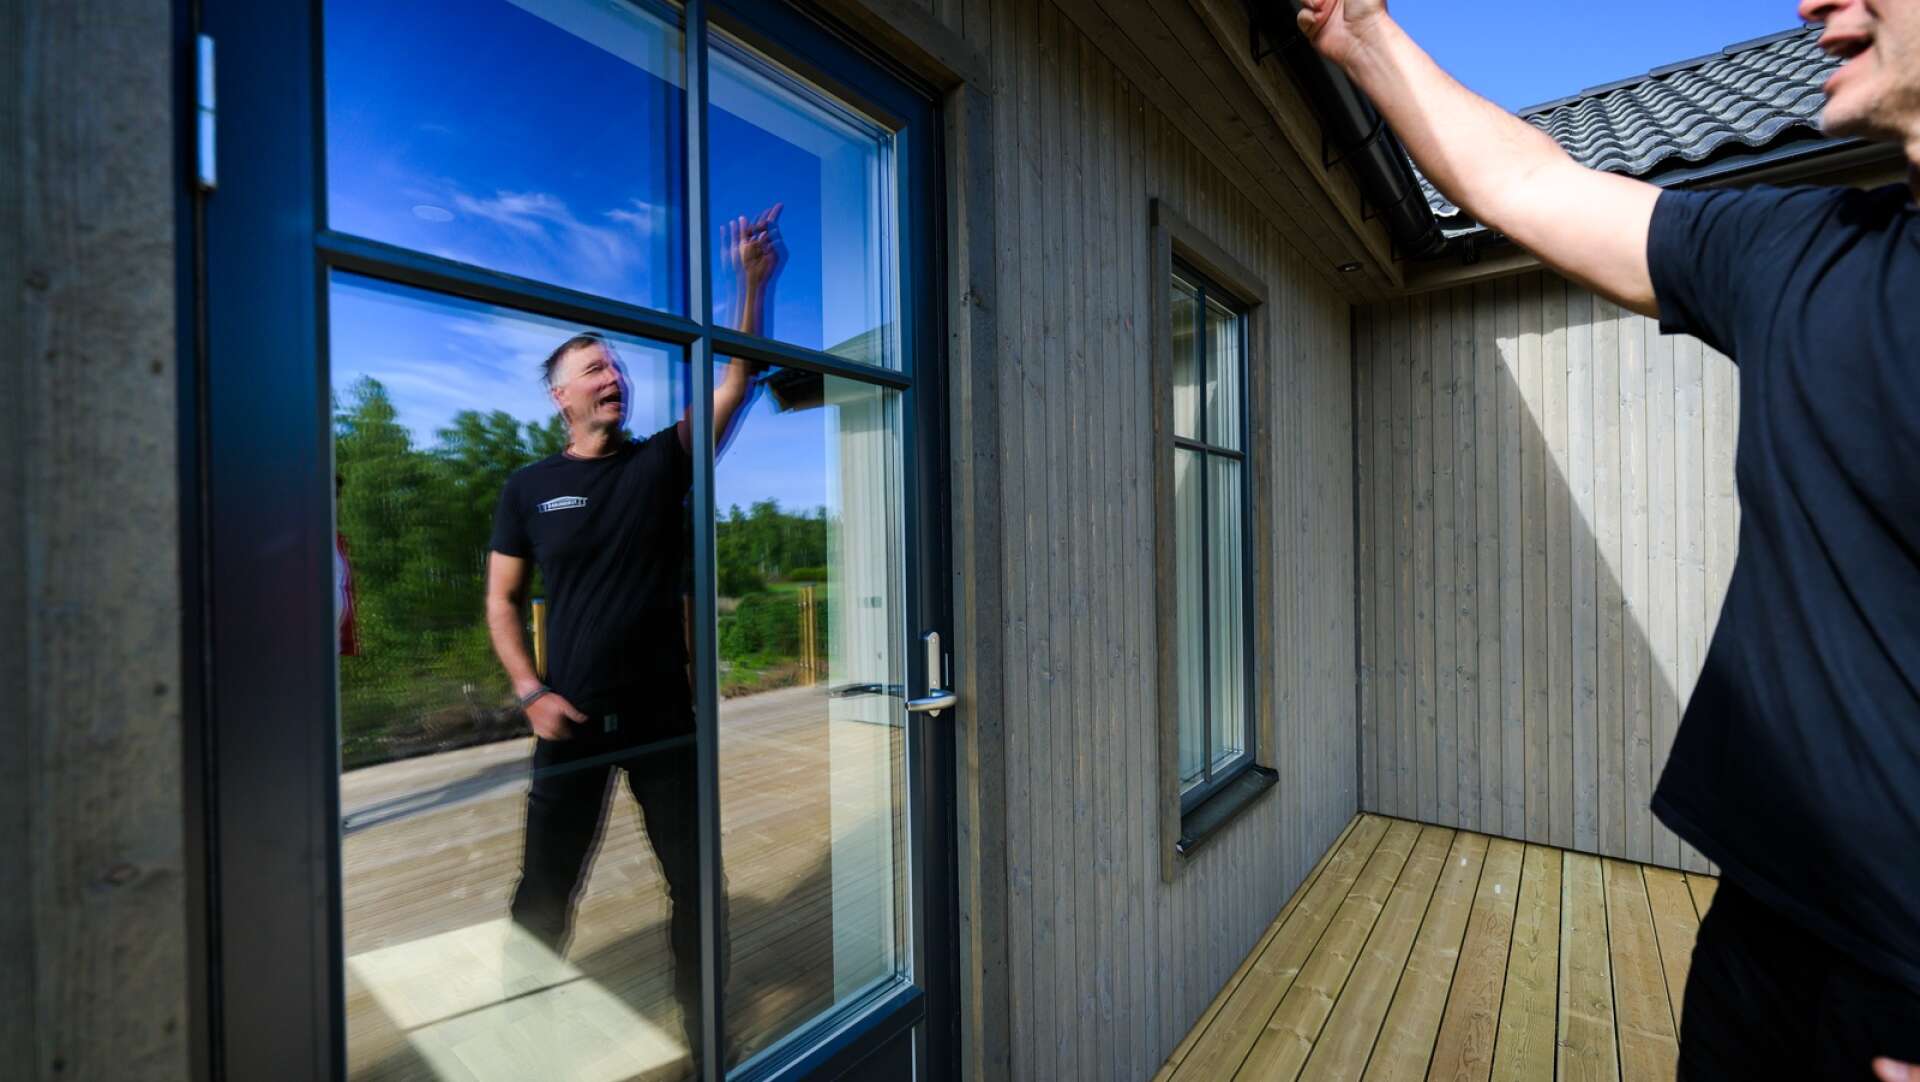 Det finns ett villaprogram på tio villor som köpare kan använda som inspiration. ”Vi bygger aldrig två hus som är lika”, säger Fredrik Johansson.